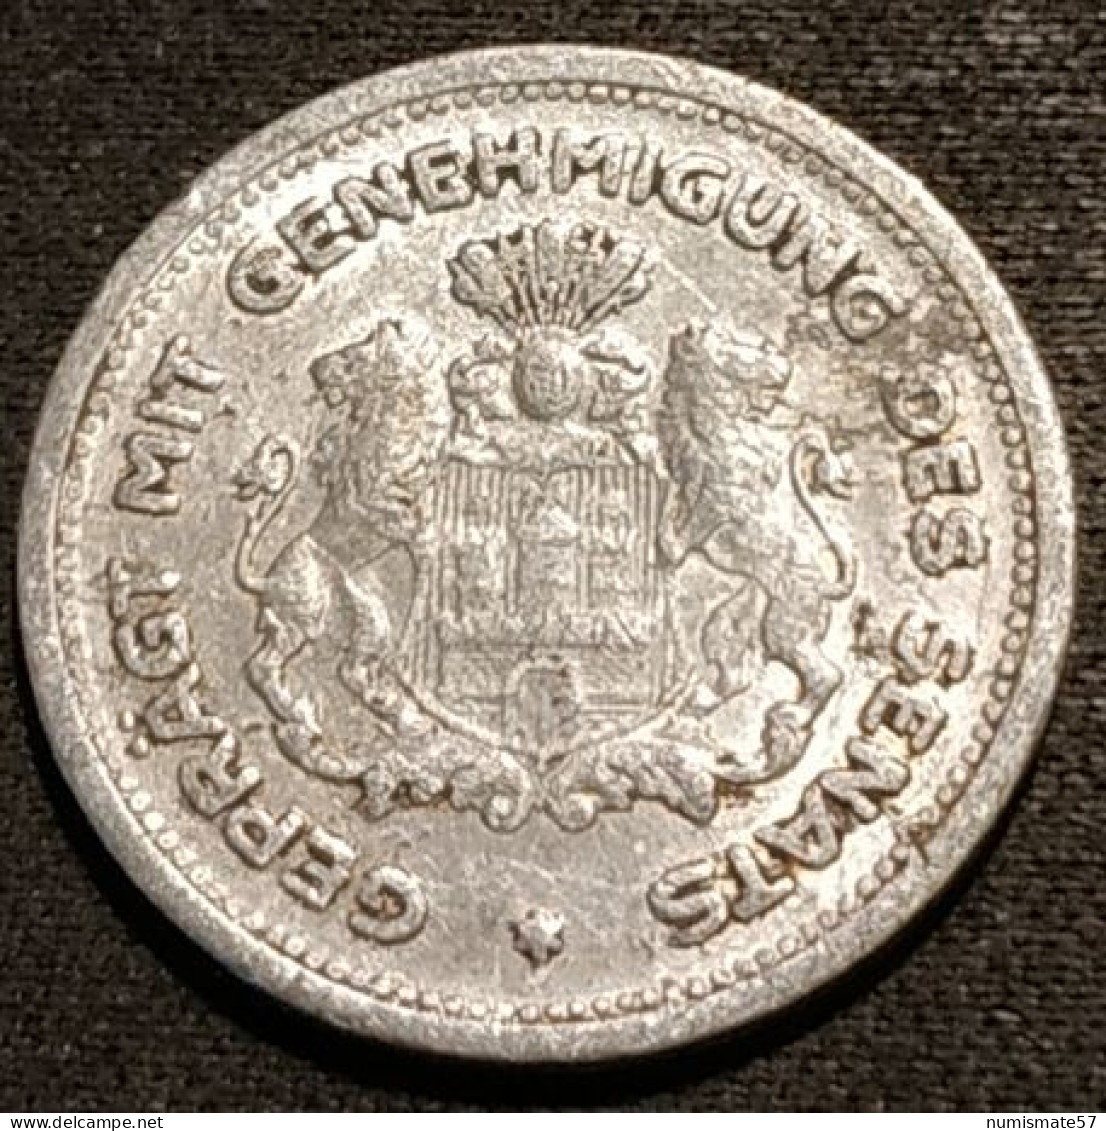 ALLEMAGNE - GERMANY - 1/100 Verrechnungsmarke - Hamburg - 1923 - Funck# 637.1a - KM# Tn1 - Notgeld